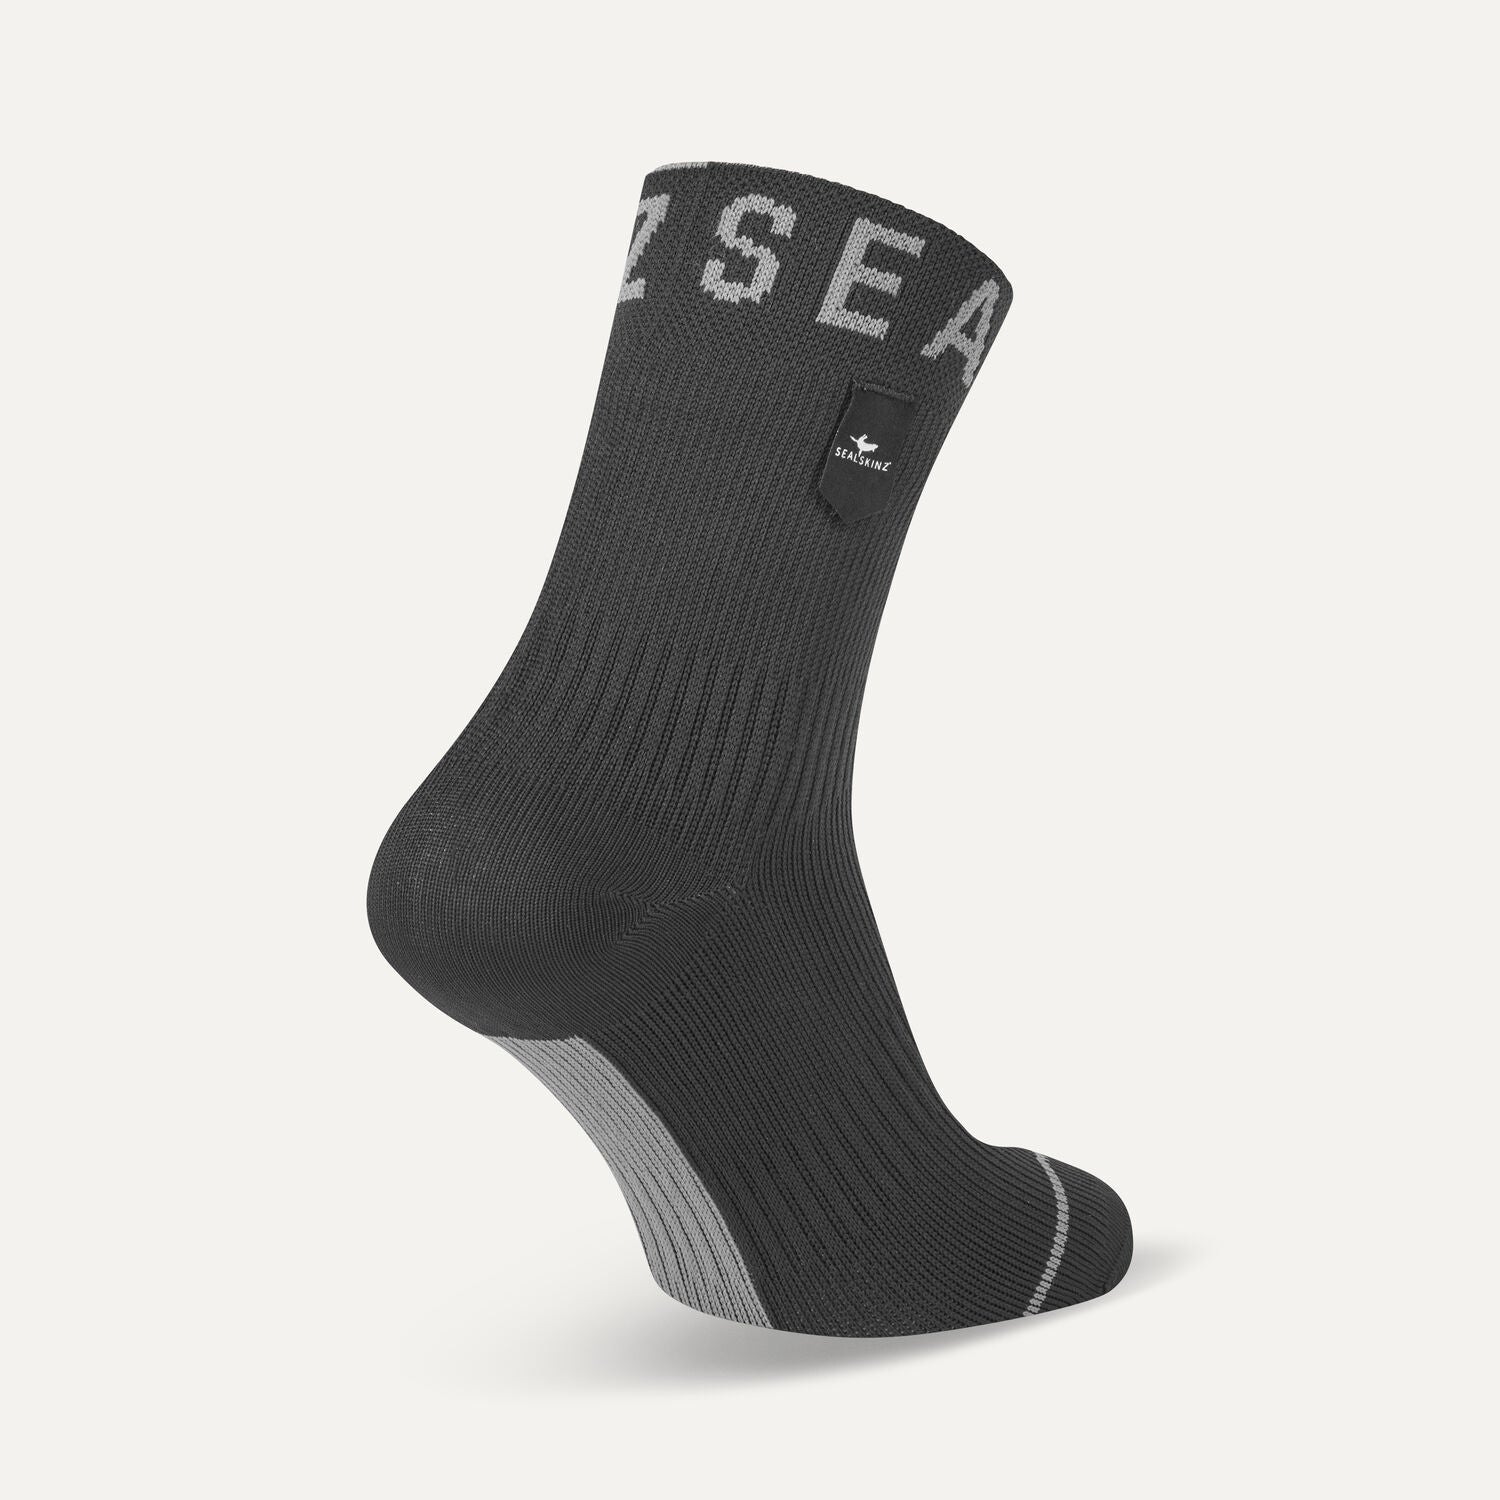 Conceptos erróneos de calcetines impermeables — Sealskinz EU